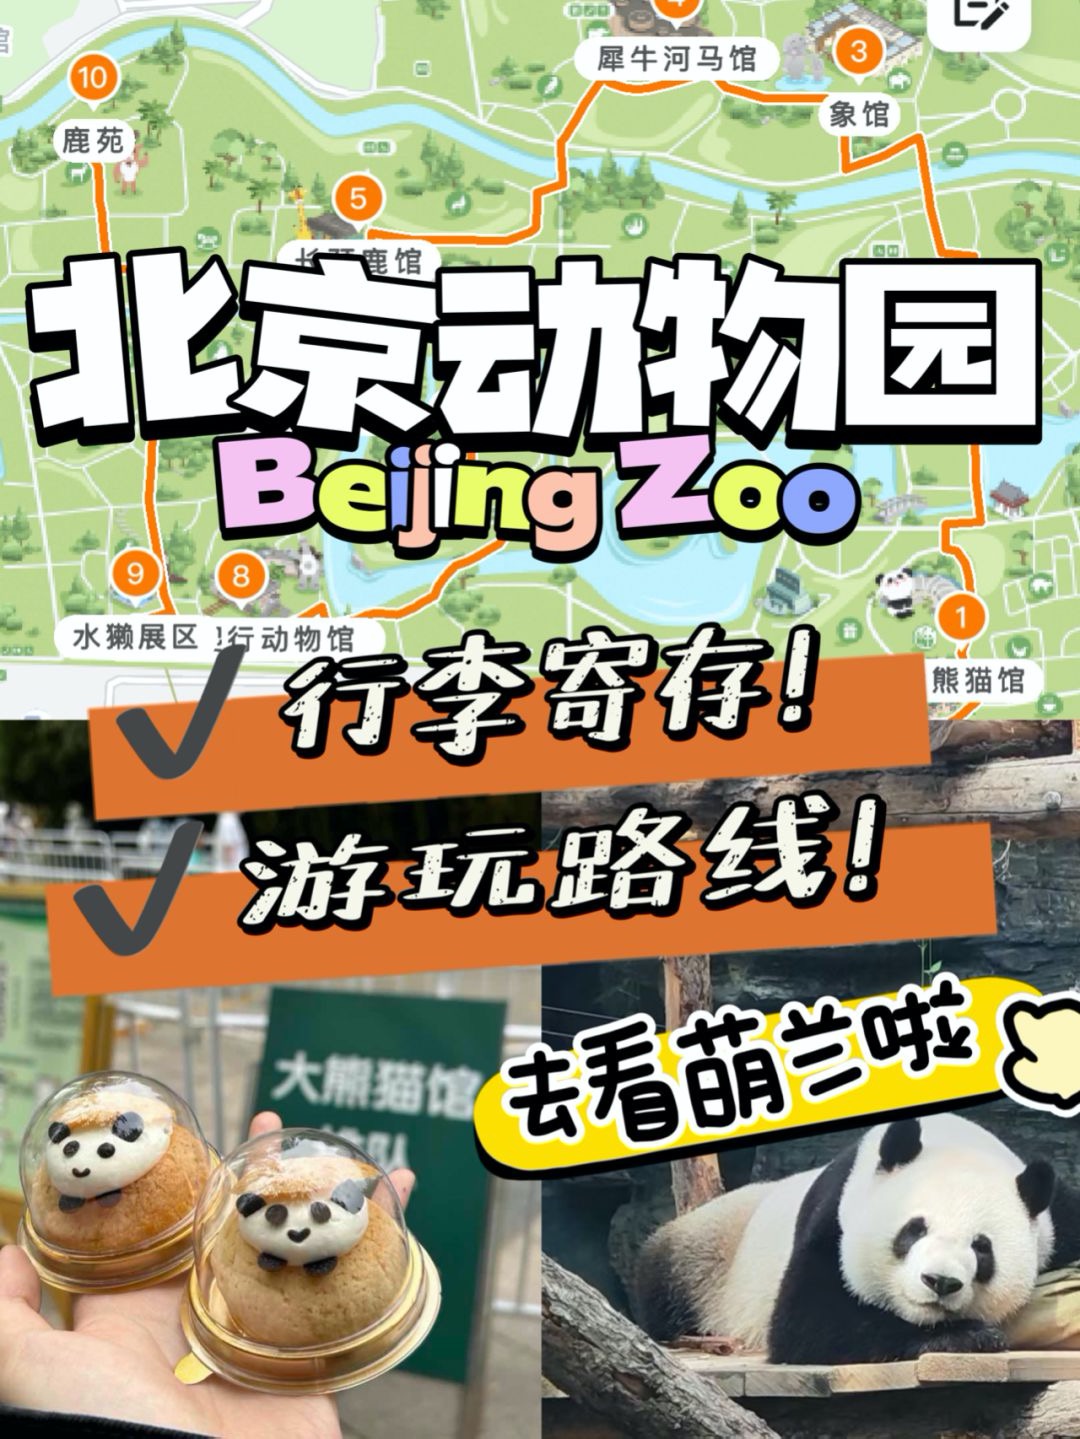 北京动物园哪里可以寄存行李？北京行李寄存指南、看萌兰攻略